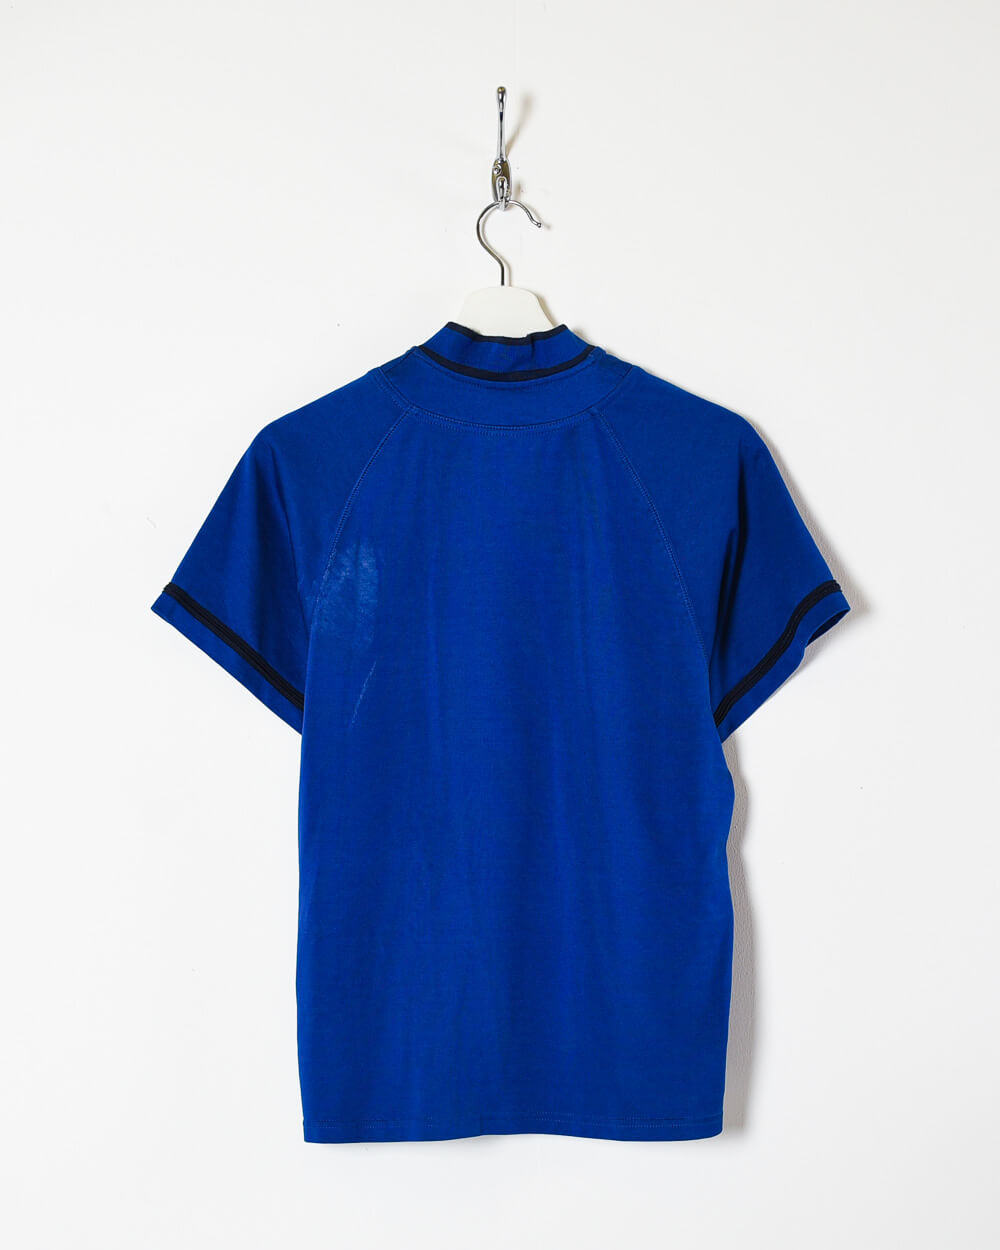 Blue Nike Women's Zip-Through T-Shirt - Small 